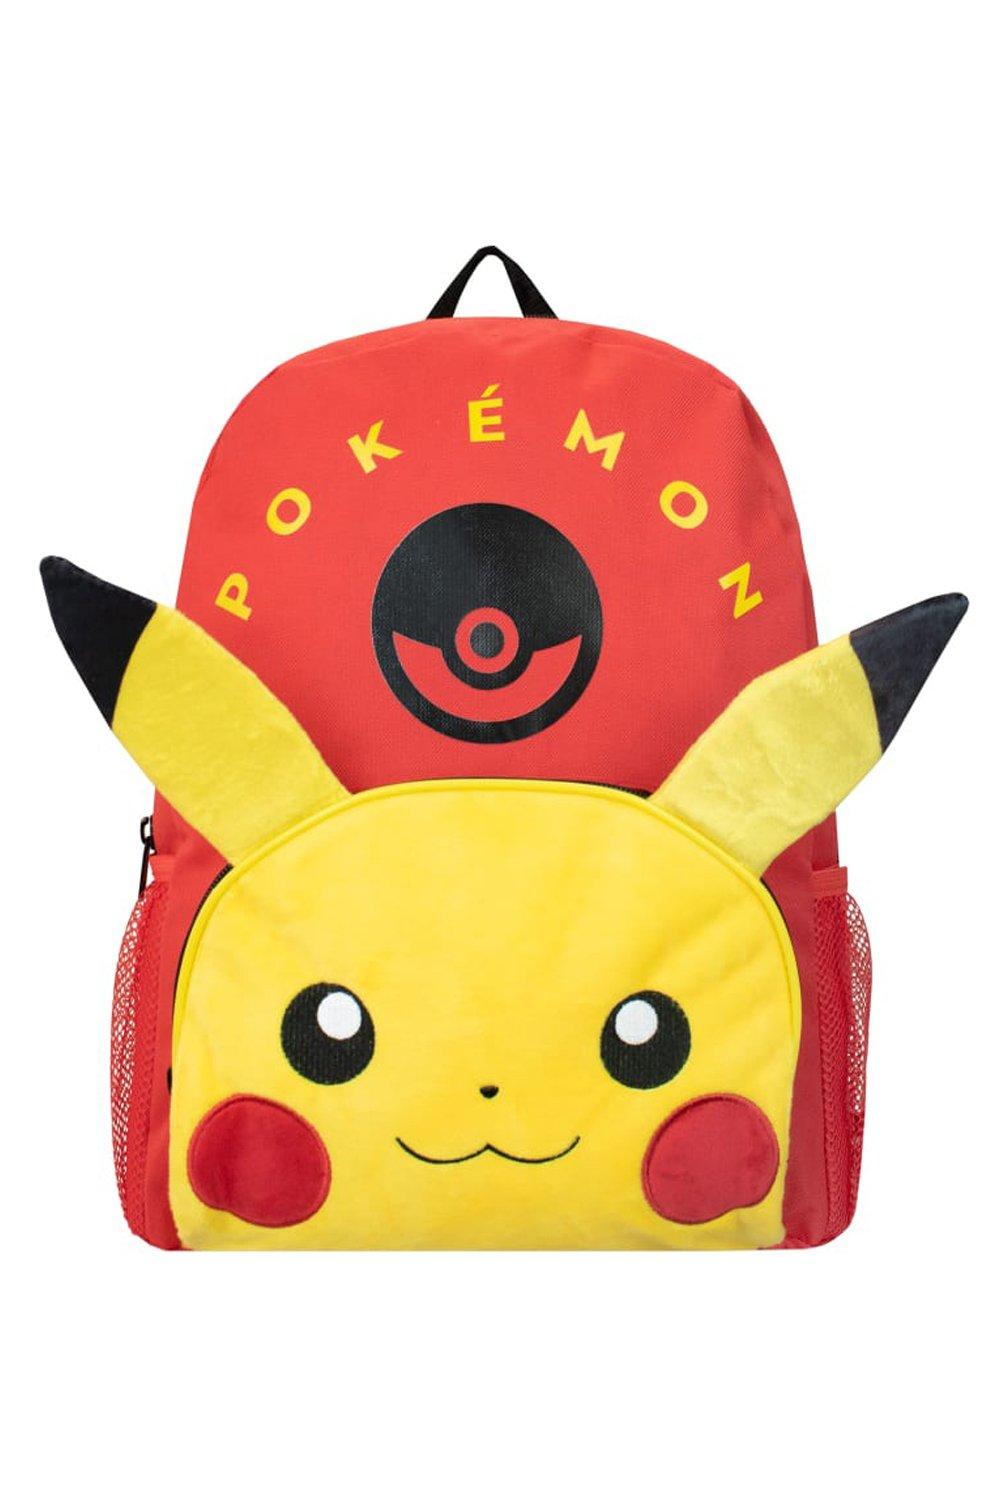 Kids Backpack 3D Pikachu Pokemon, красный wholesale kids backpack